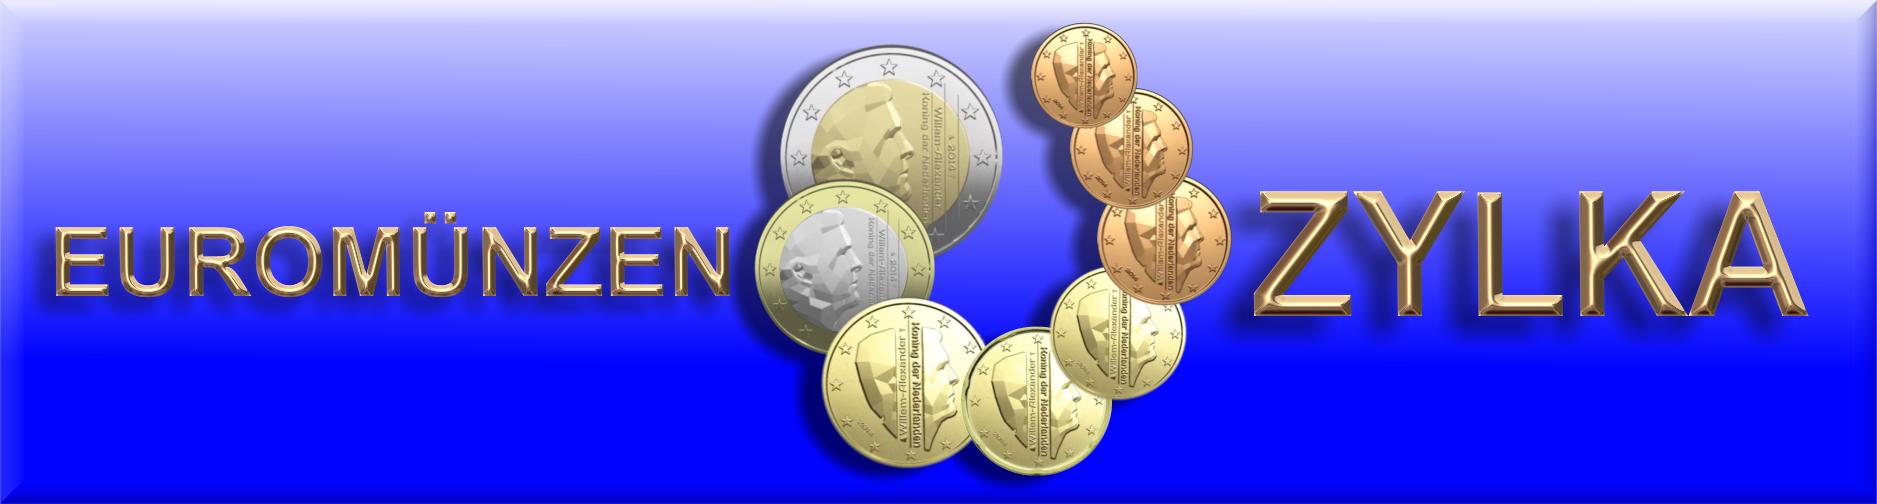 Euromünzen Zylka